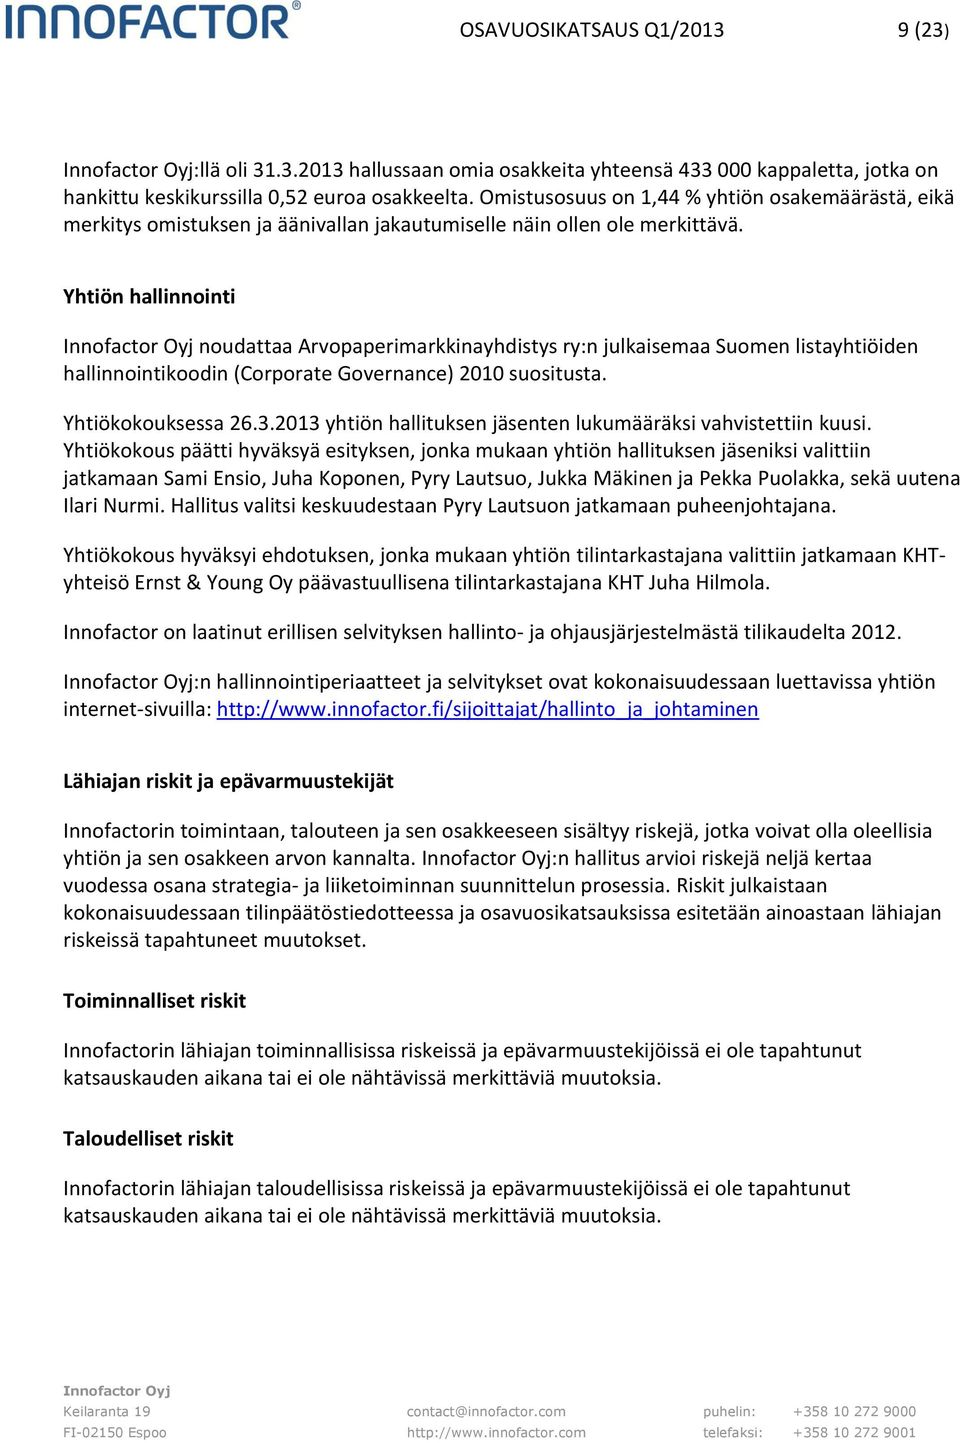 Yhtiön hallinnointi noudattaa Arvopaperimarkkinayhdistys ry:n julkaisemaa Suomen listayhtiöiden hallinnointikoodin (Corporate Governance) 2010 suositusta. Yhtiökokouksessa 26.3.